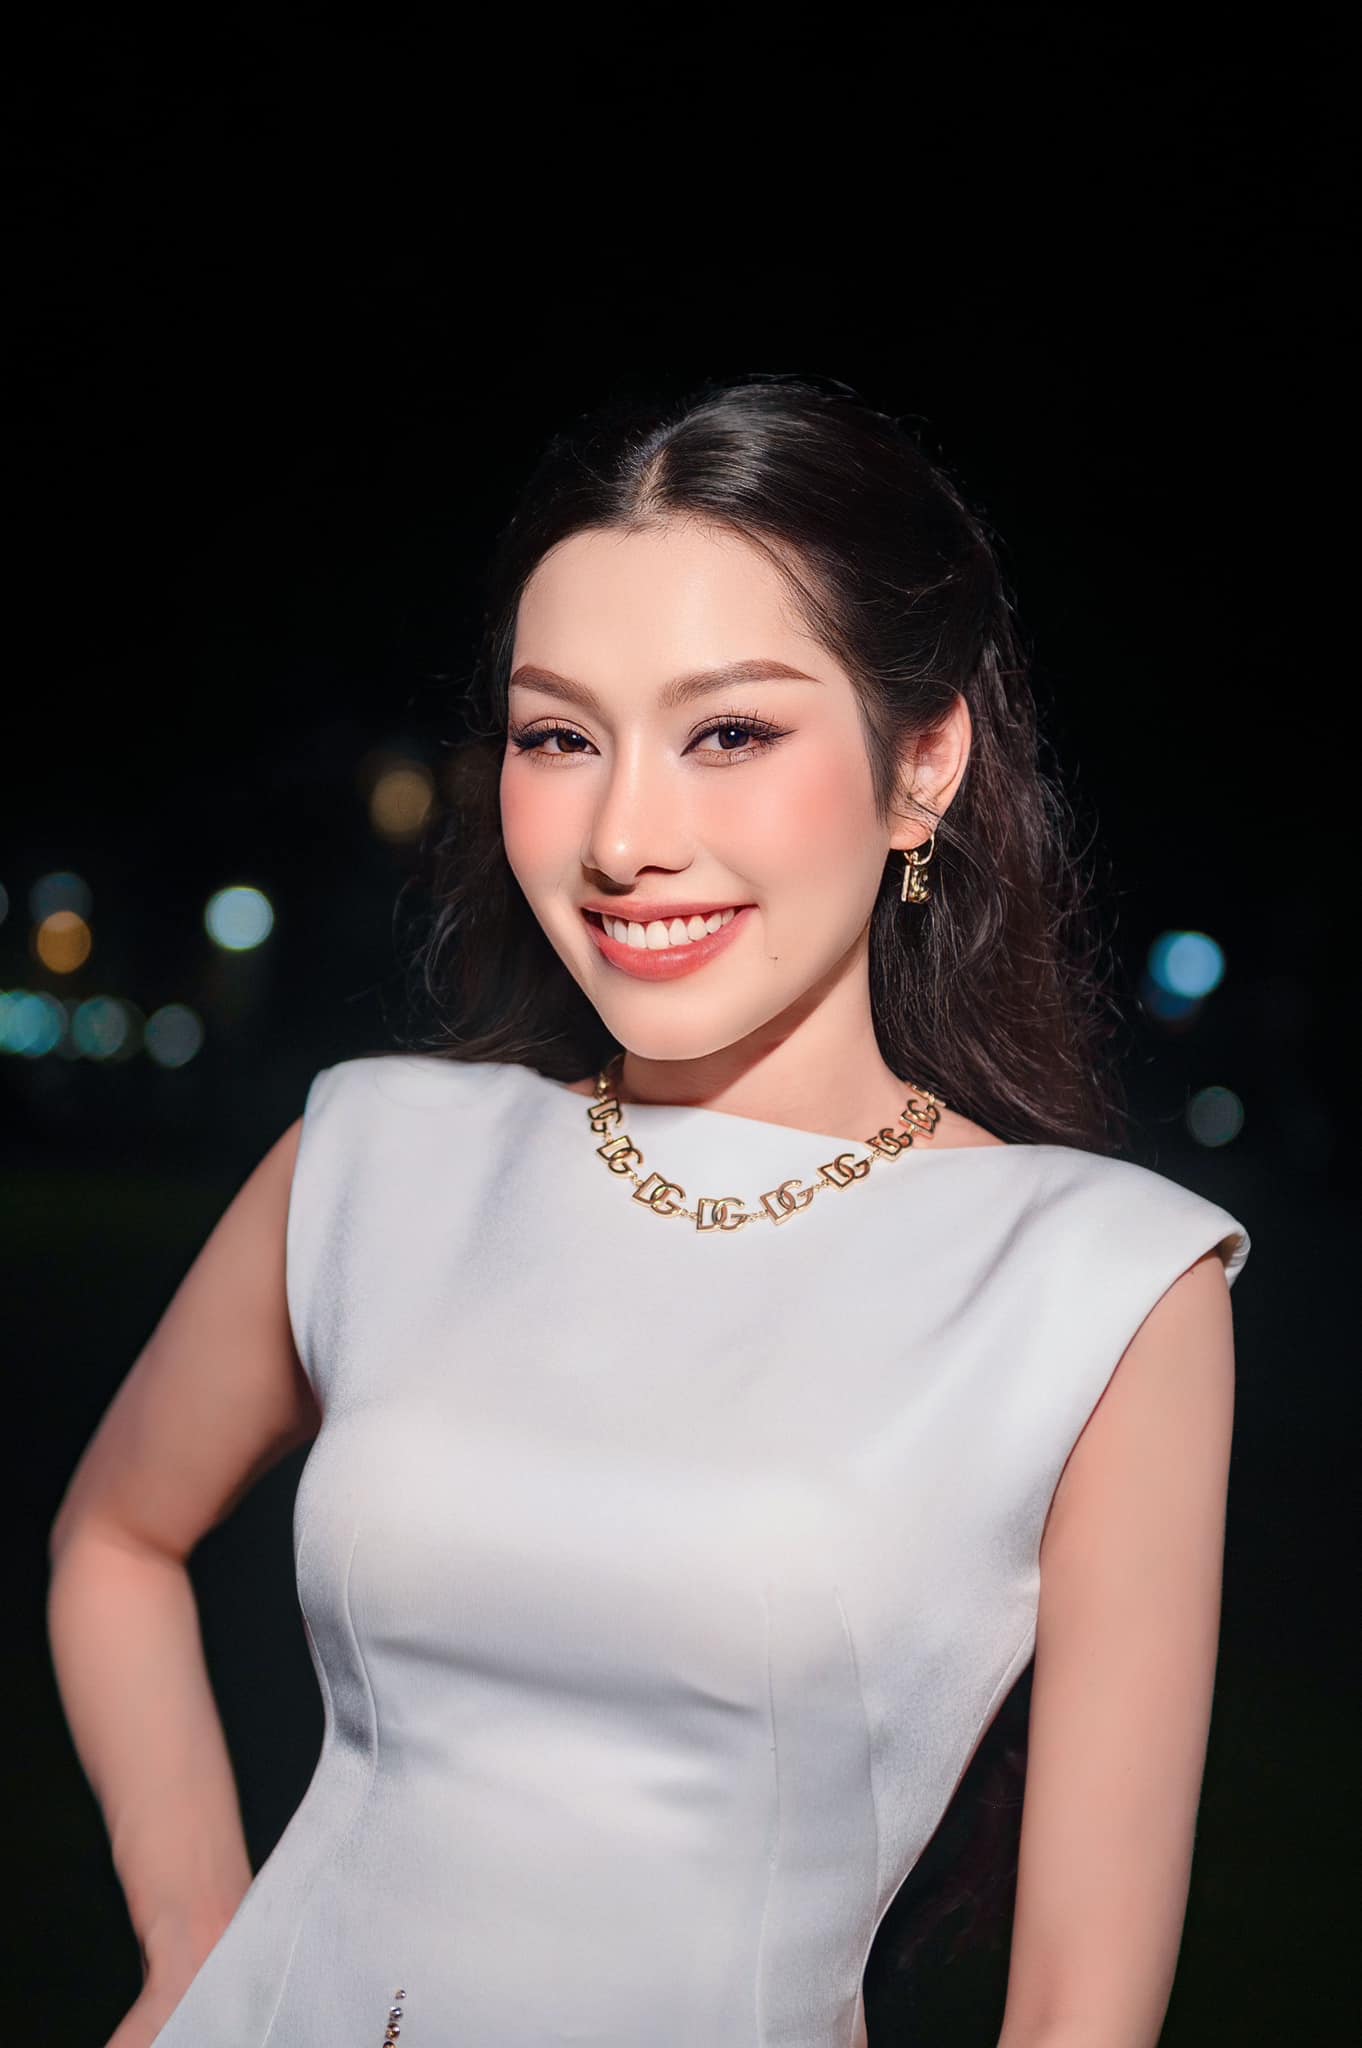 Vẻ đẹp rạng ngời của Top 15 Hoa hậu hoàn vũ Việt Nam Thủy Bùi. Cô trải nghiệm thi hoa hậu để tìm kiếm cơ hội đi hát nhiều hơn.